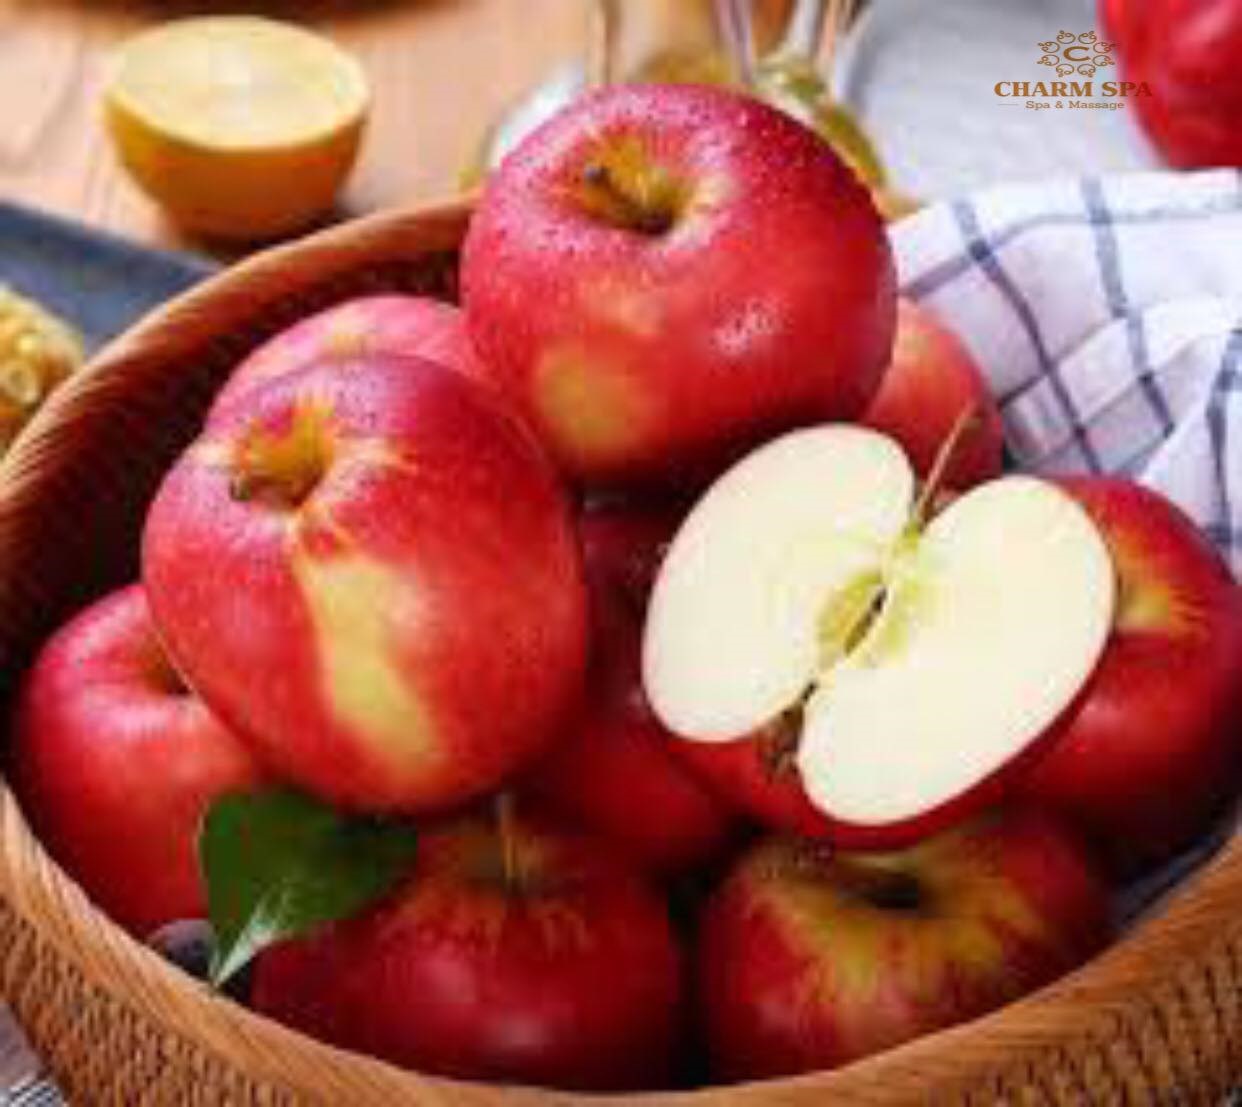 Trong táo có chứa axit malic - một loại axit nằm trong gan